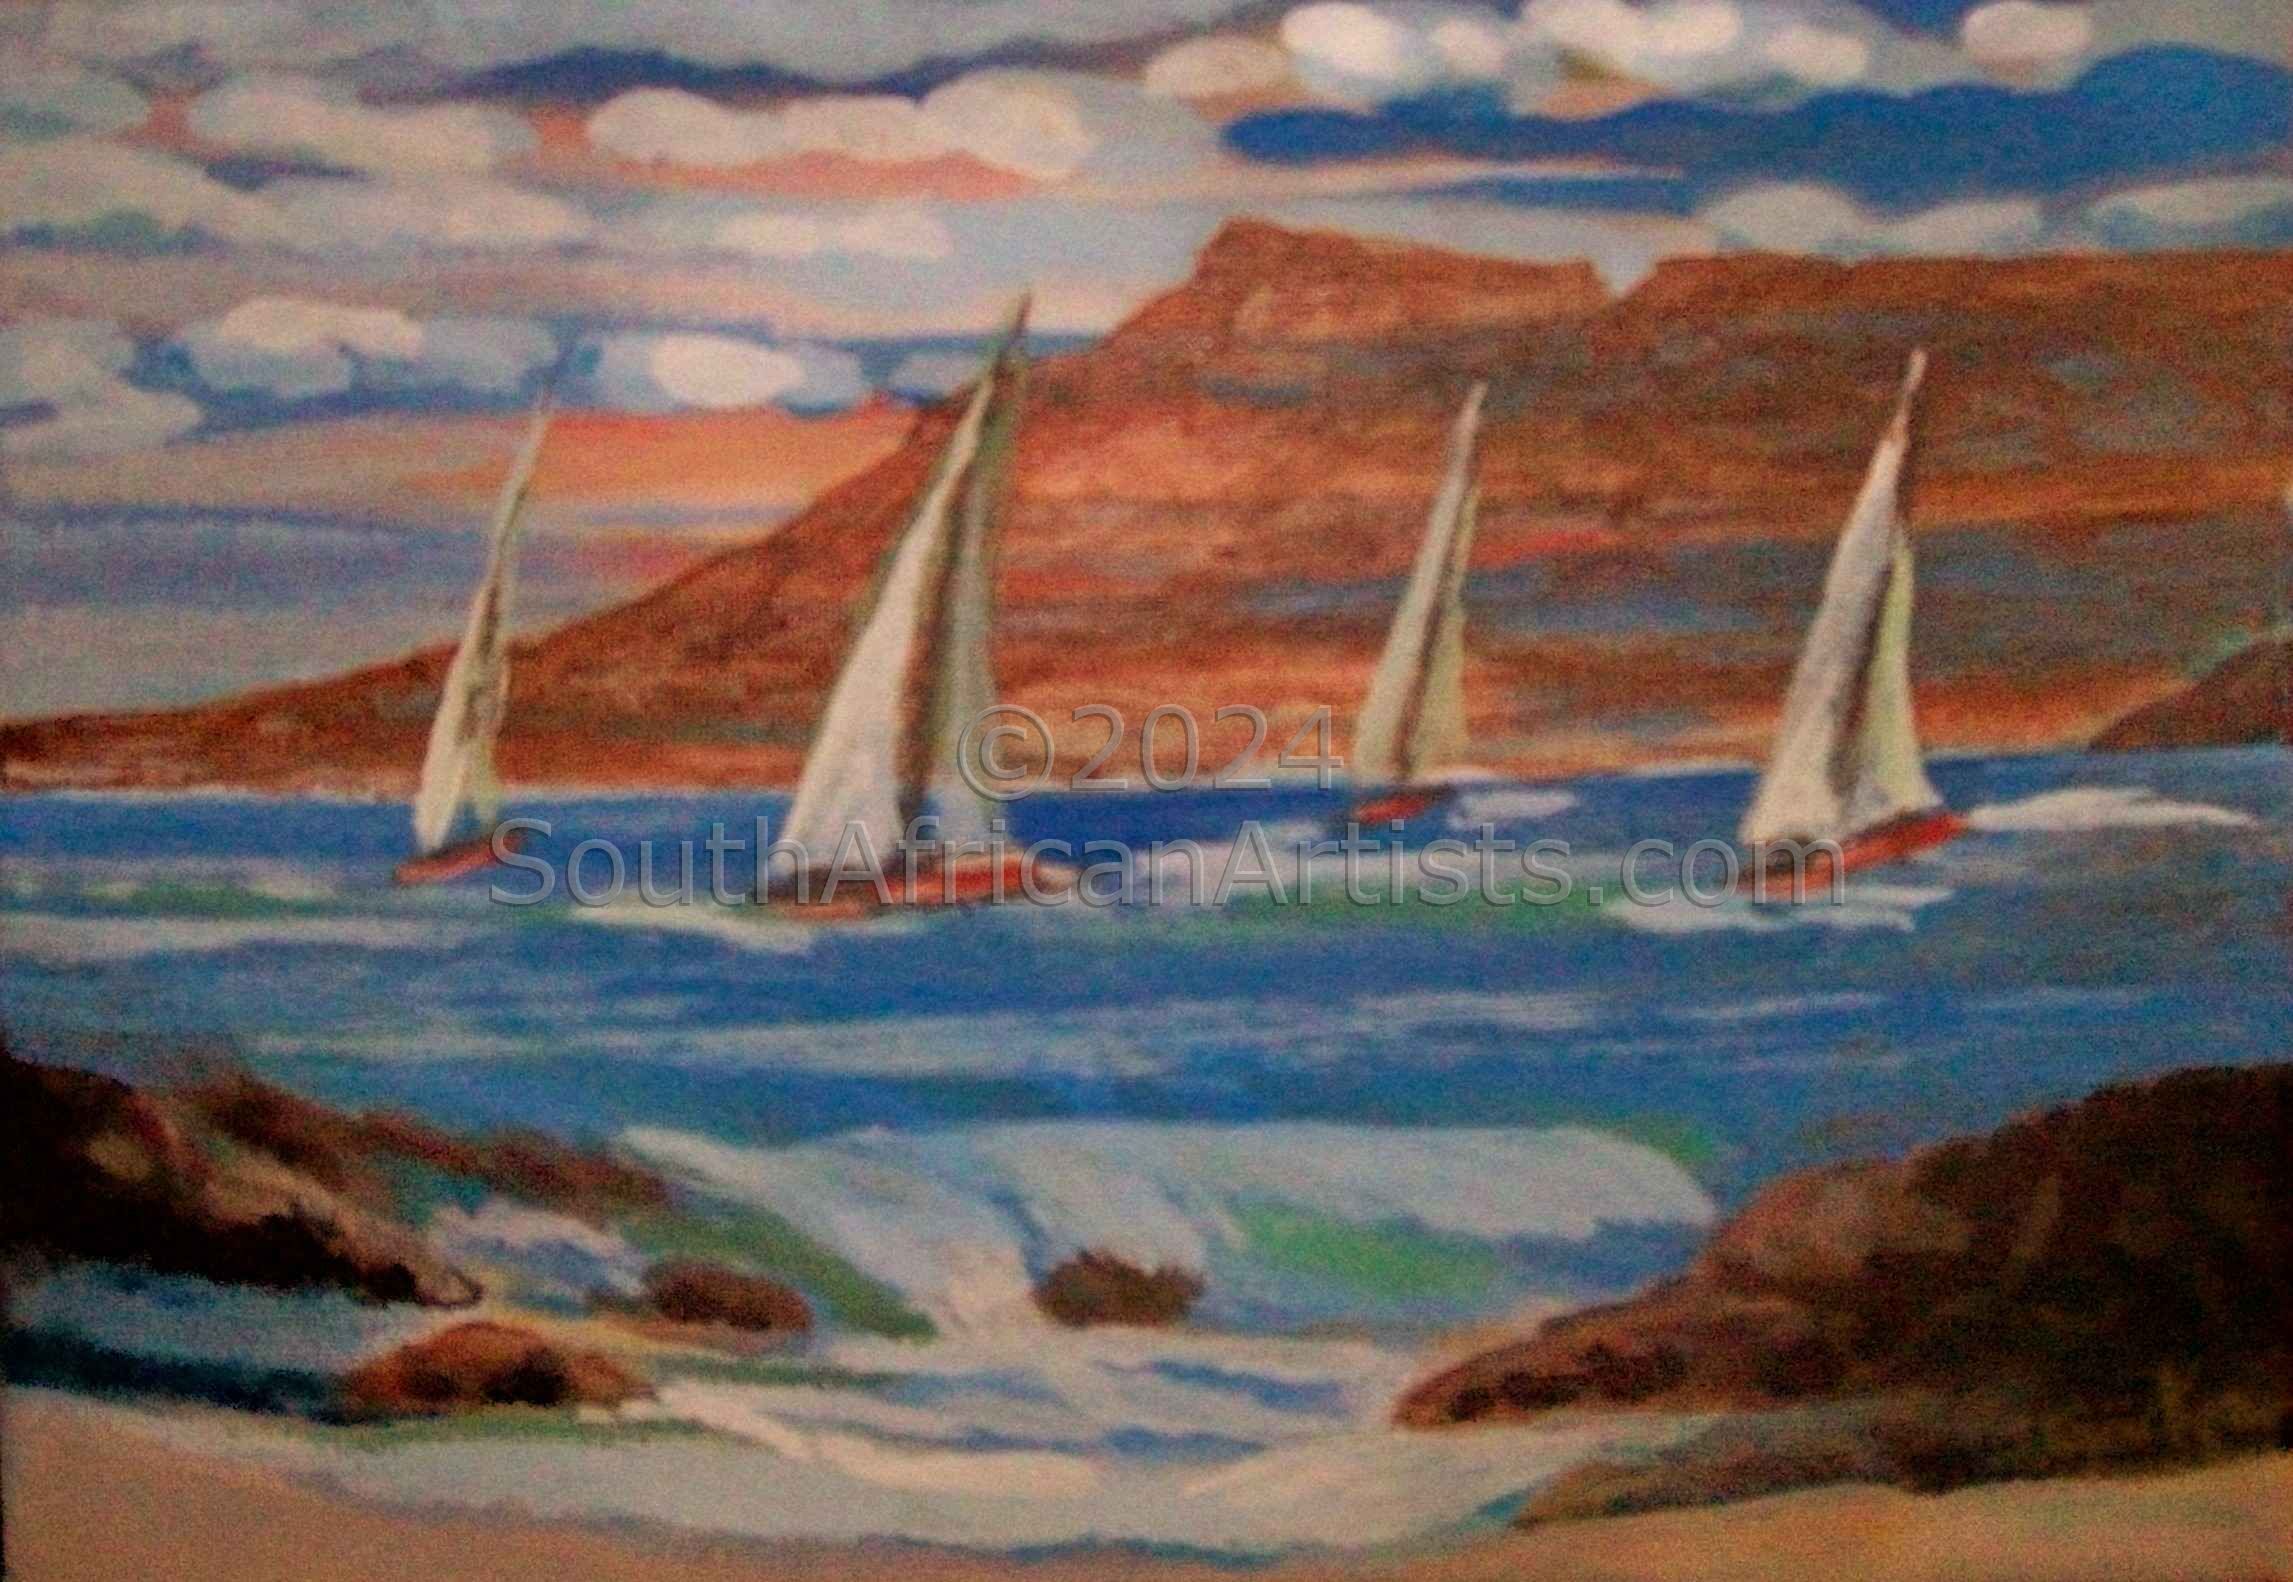 The 4 Sailboats